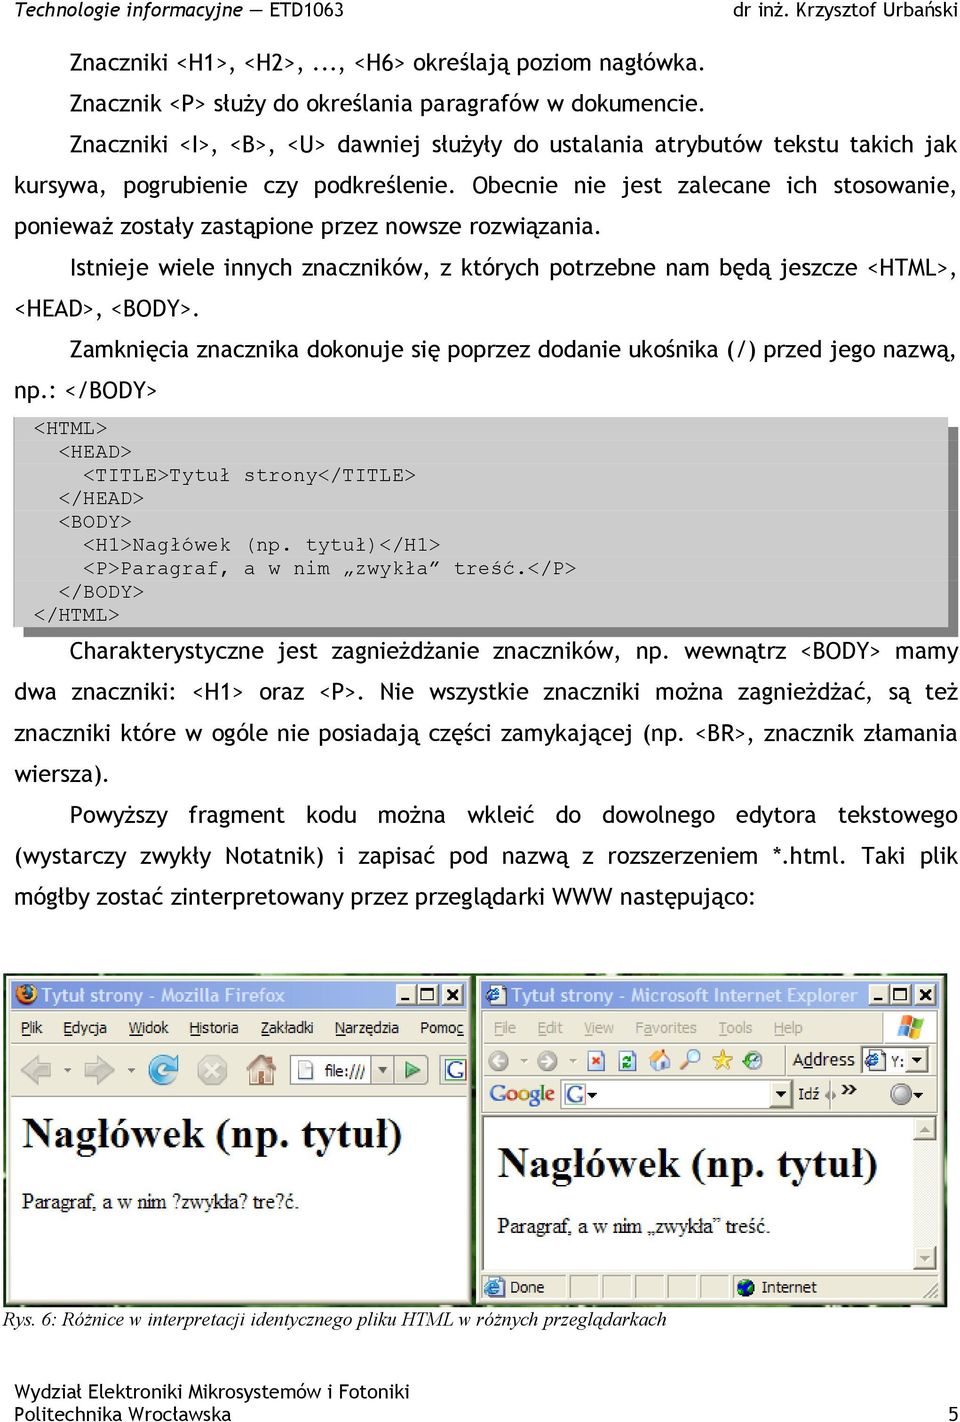 Lab.1. Praca z tekstem: stosowanie arkuszy stylów w dokumentach OO oraz HTML/CSS  - PDF Free Download